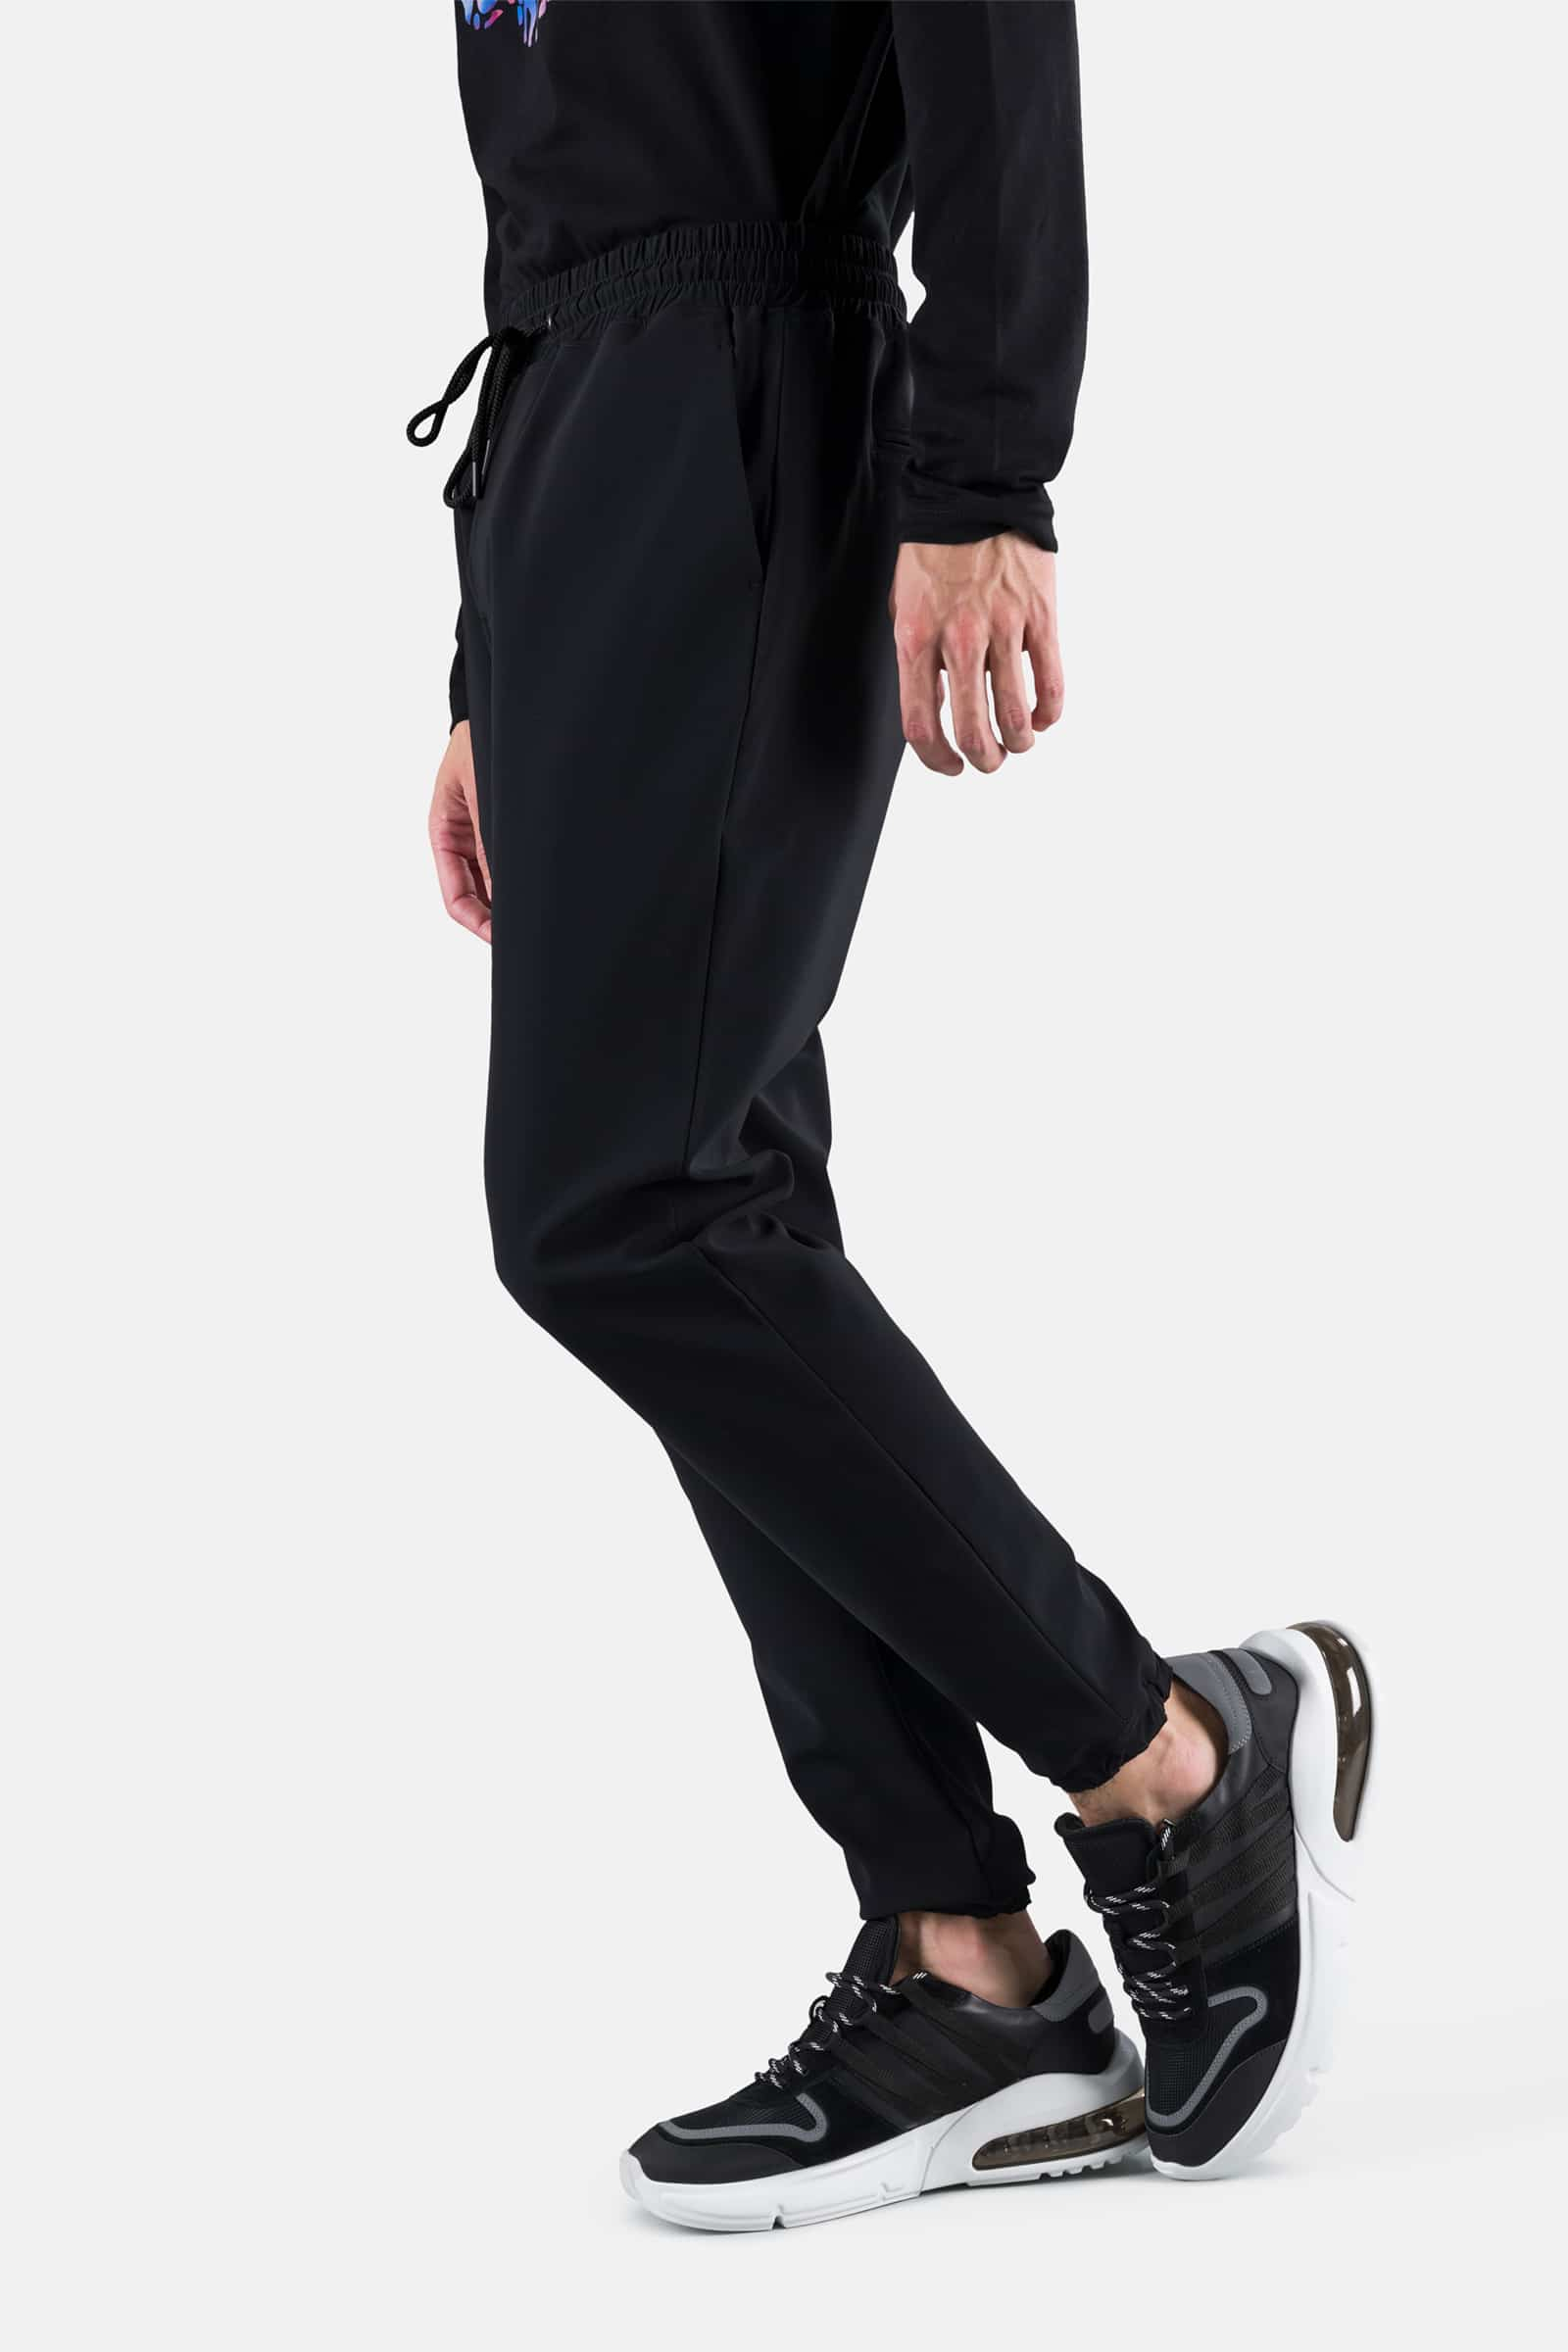 TRACKSUIT PANTS - Outlet Hydrogen - Luxury Sportwear